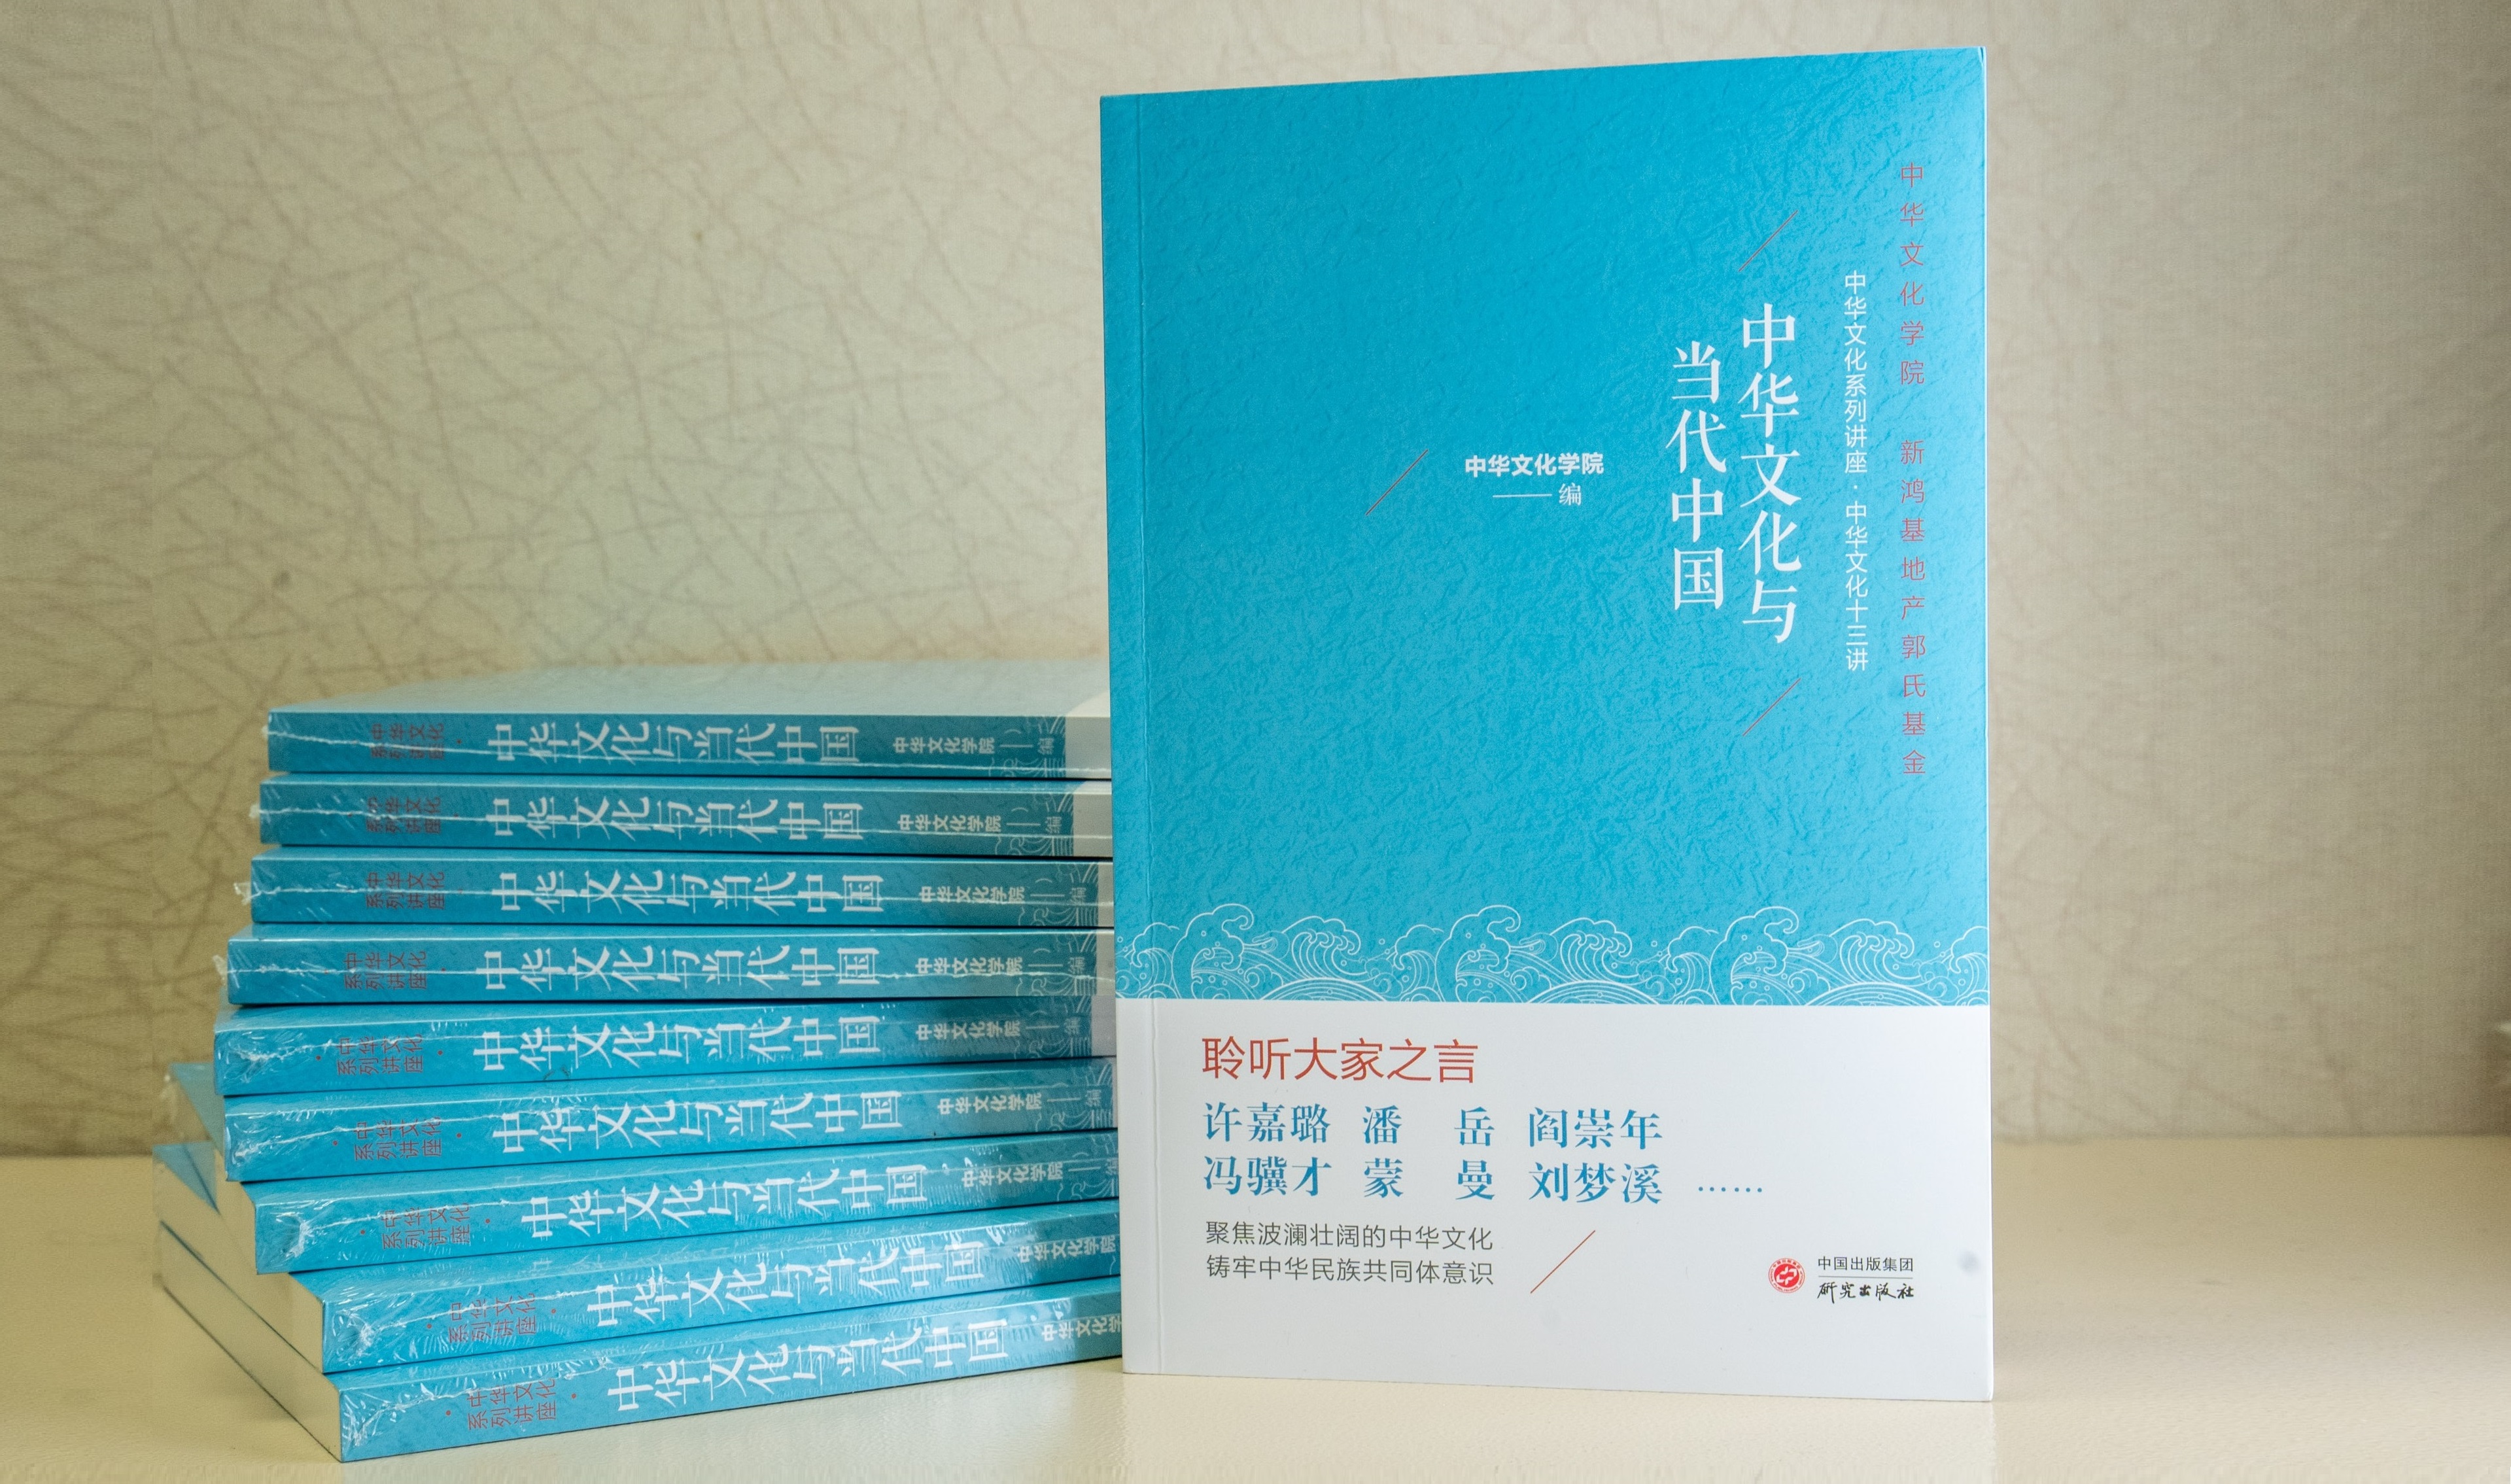 中華文化學院 - 文化講座及文集出版